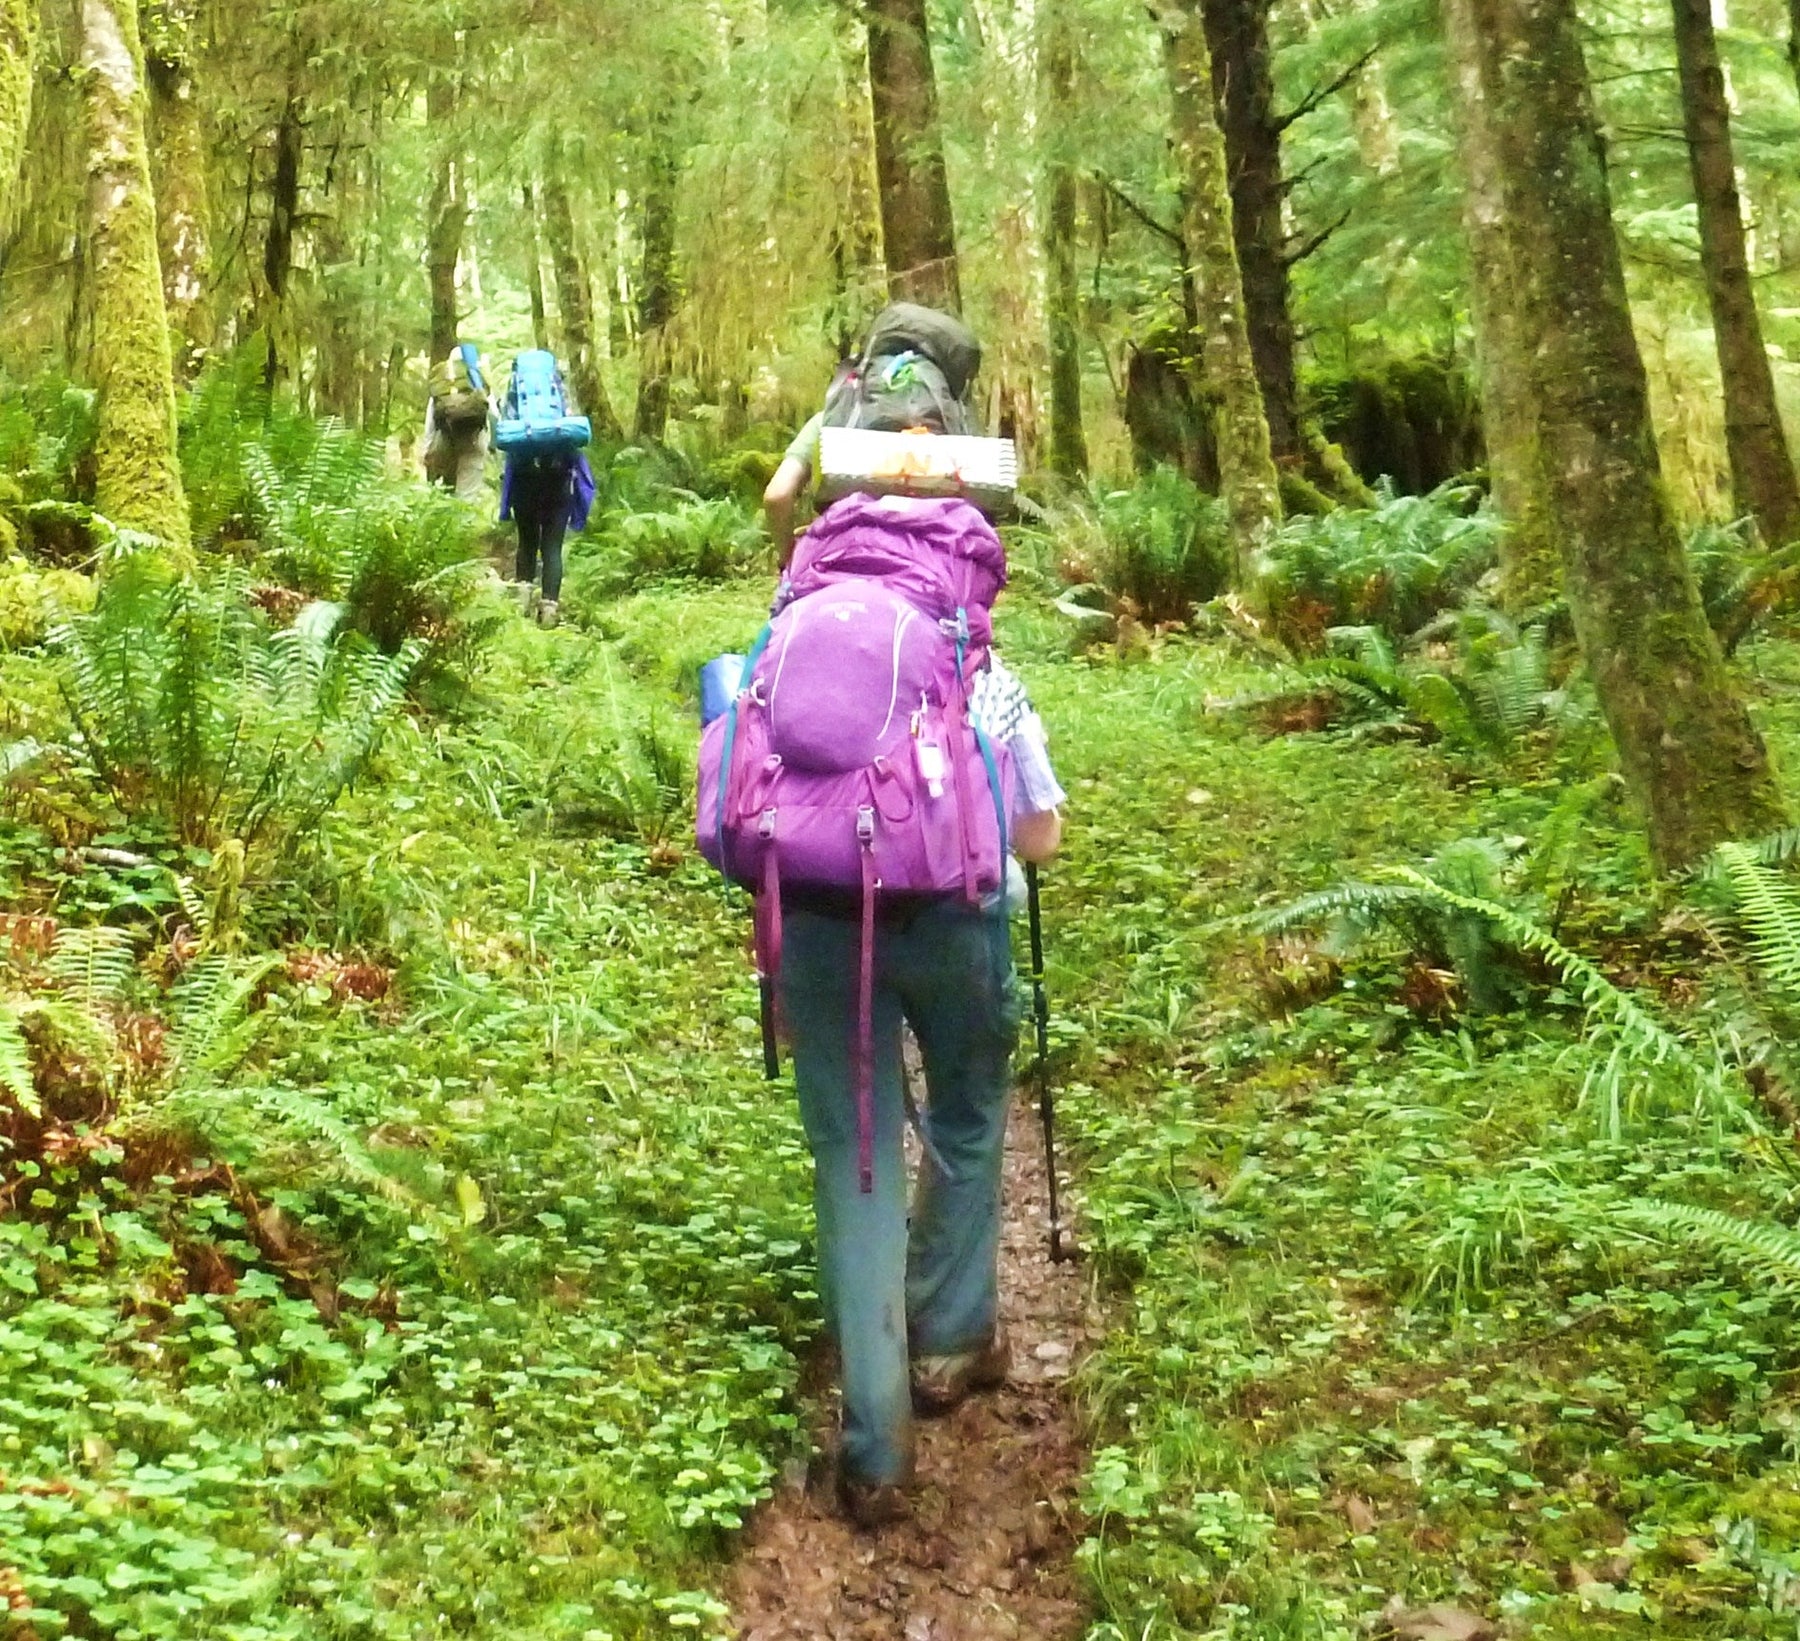 Trip Report: Outdoor School Oregon Coast Backpack - Next Adventure